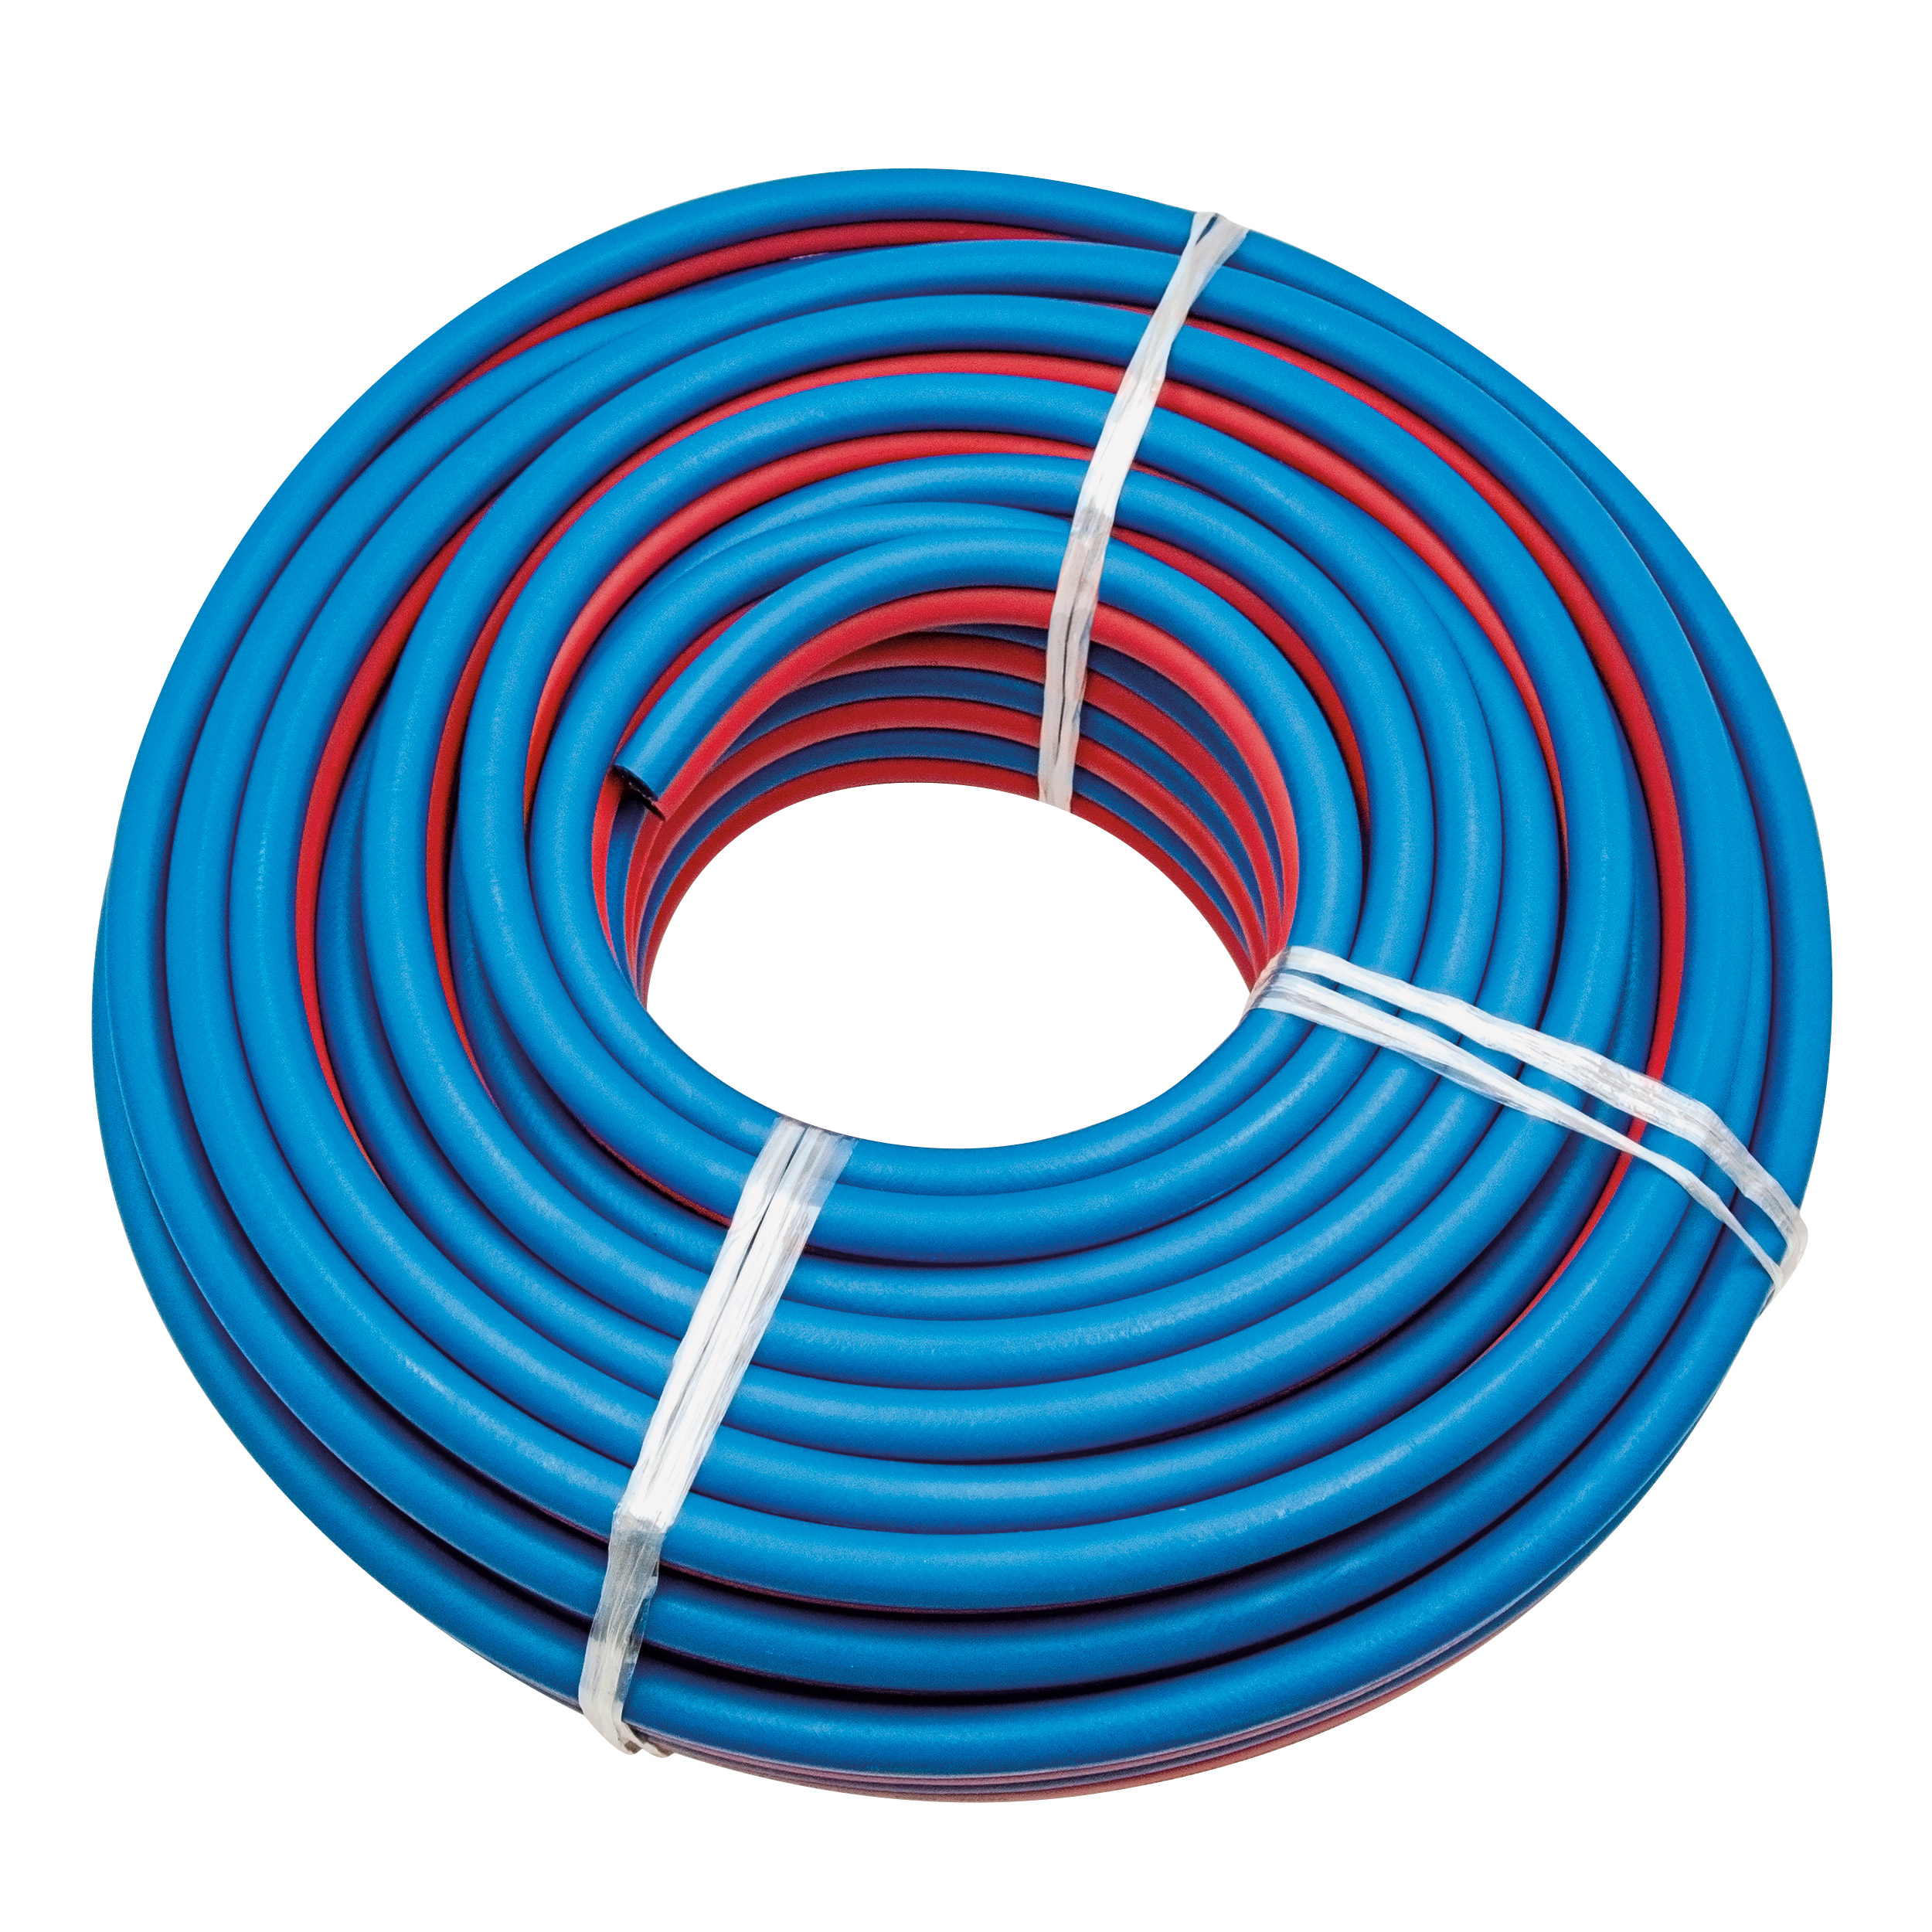 Autogen-Zwillingsschlauch rot-blau NW 6x3,5 EN 559 Rolle 40 m